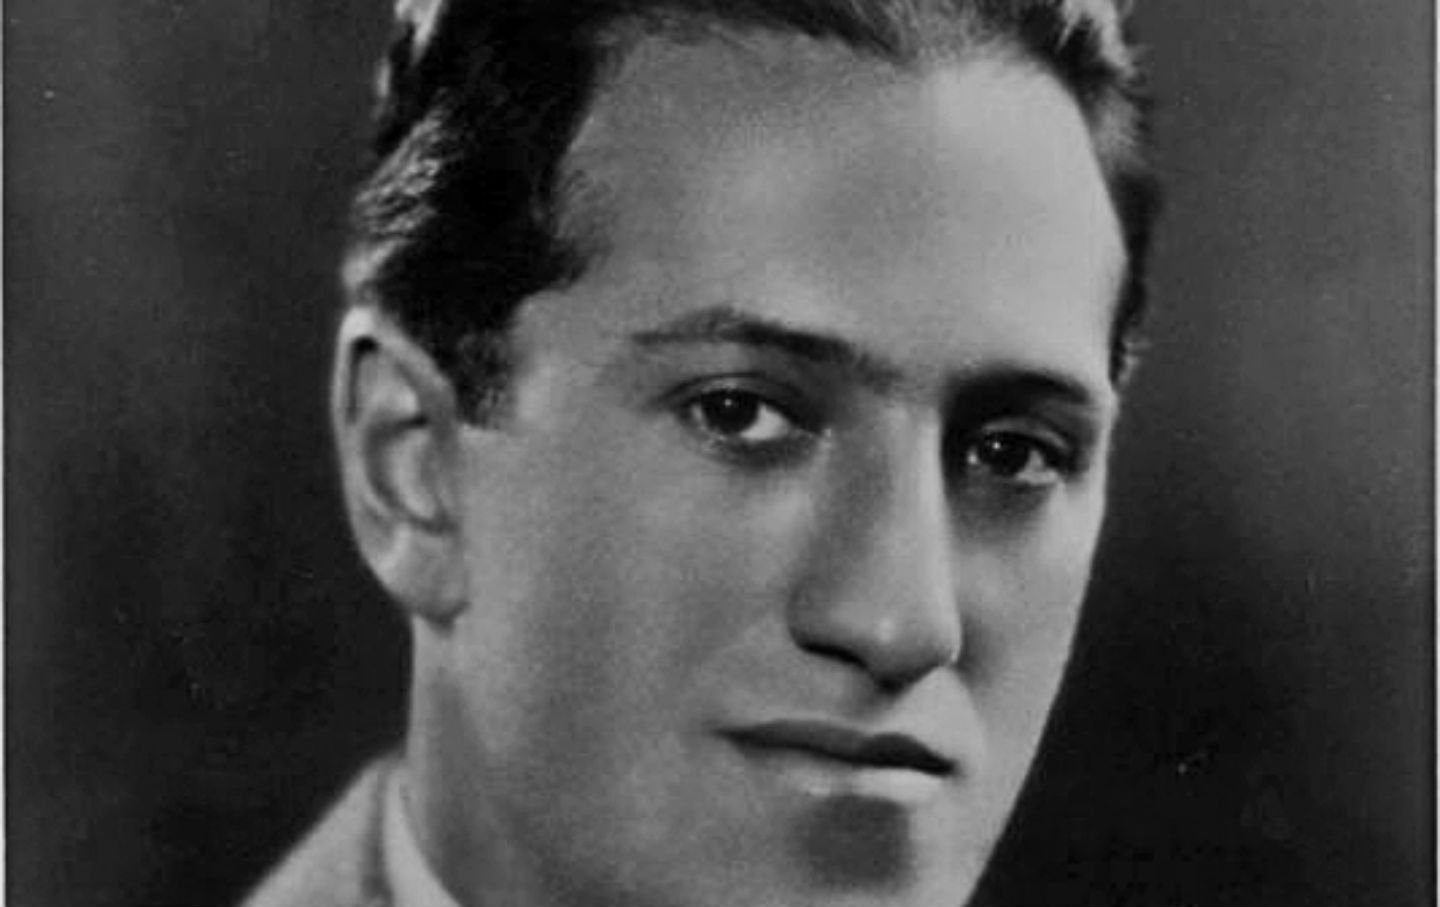 July 11, 1937: George Gershwin Dies